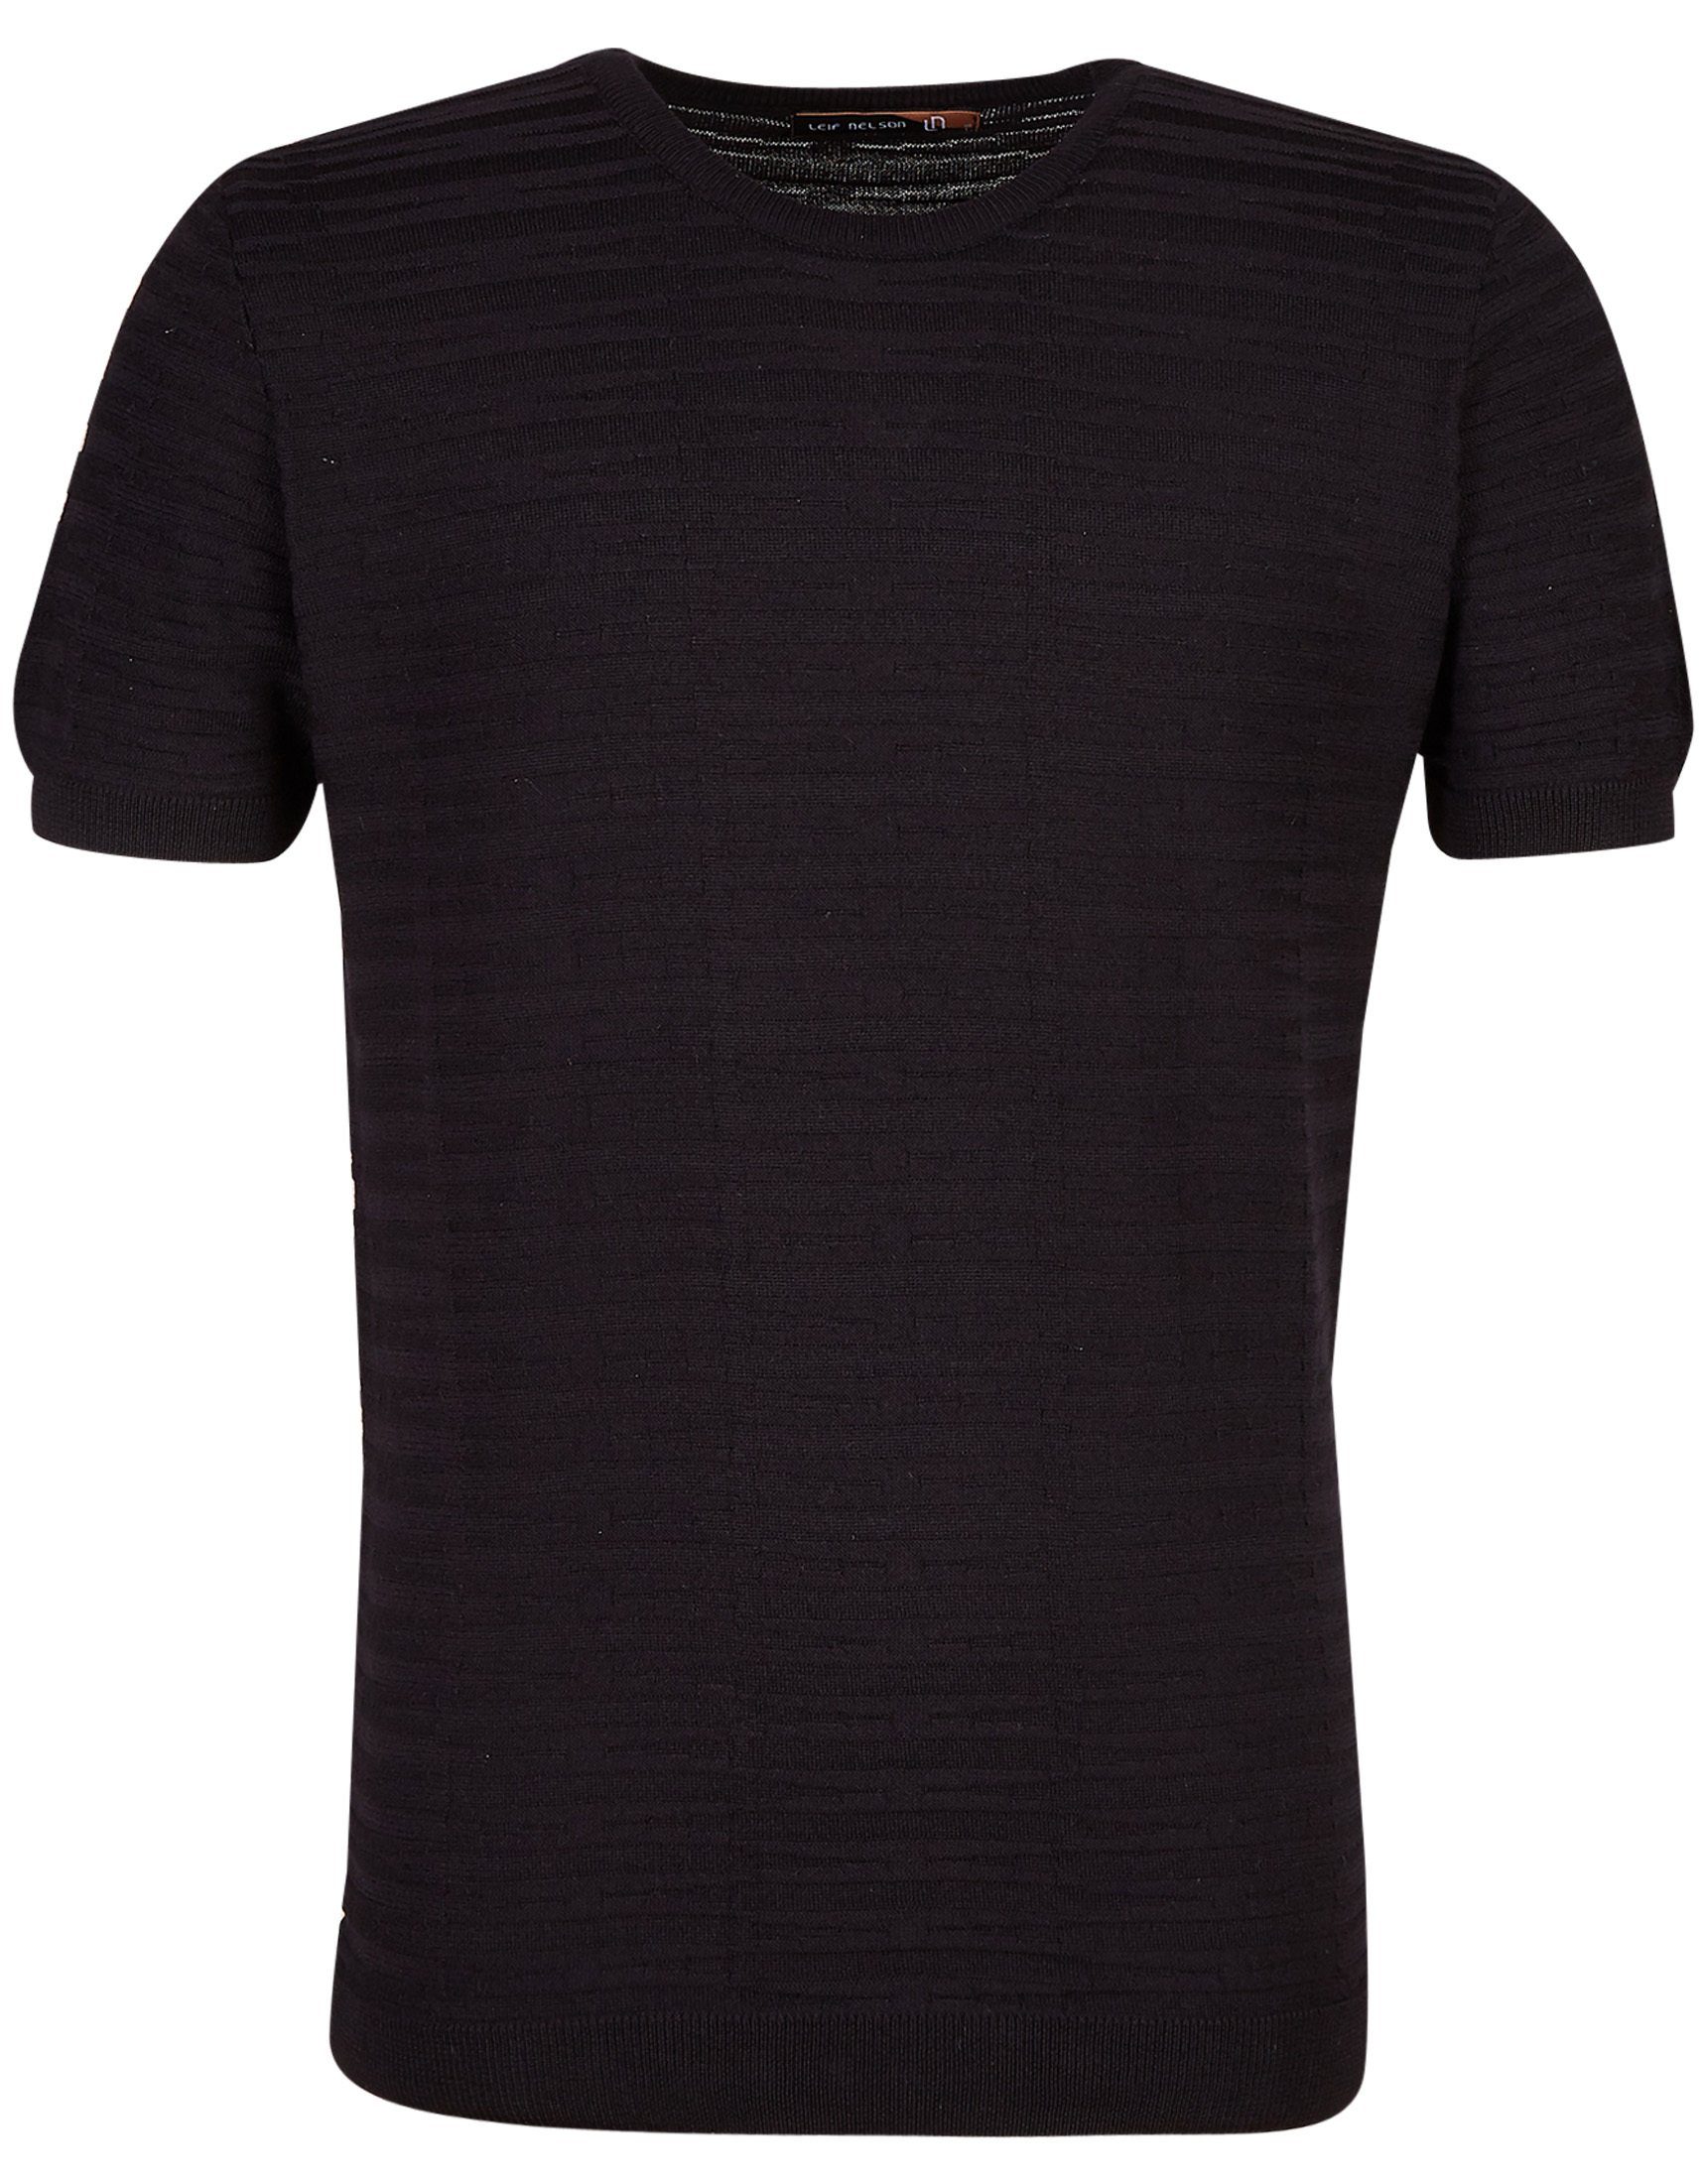 Leif Nelson T-Shirt LN-7665 schwarz